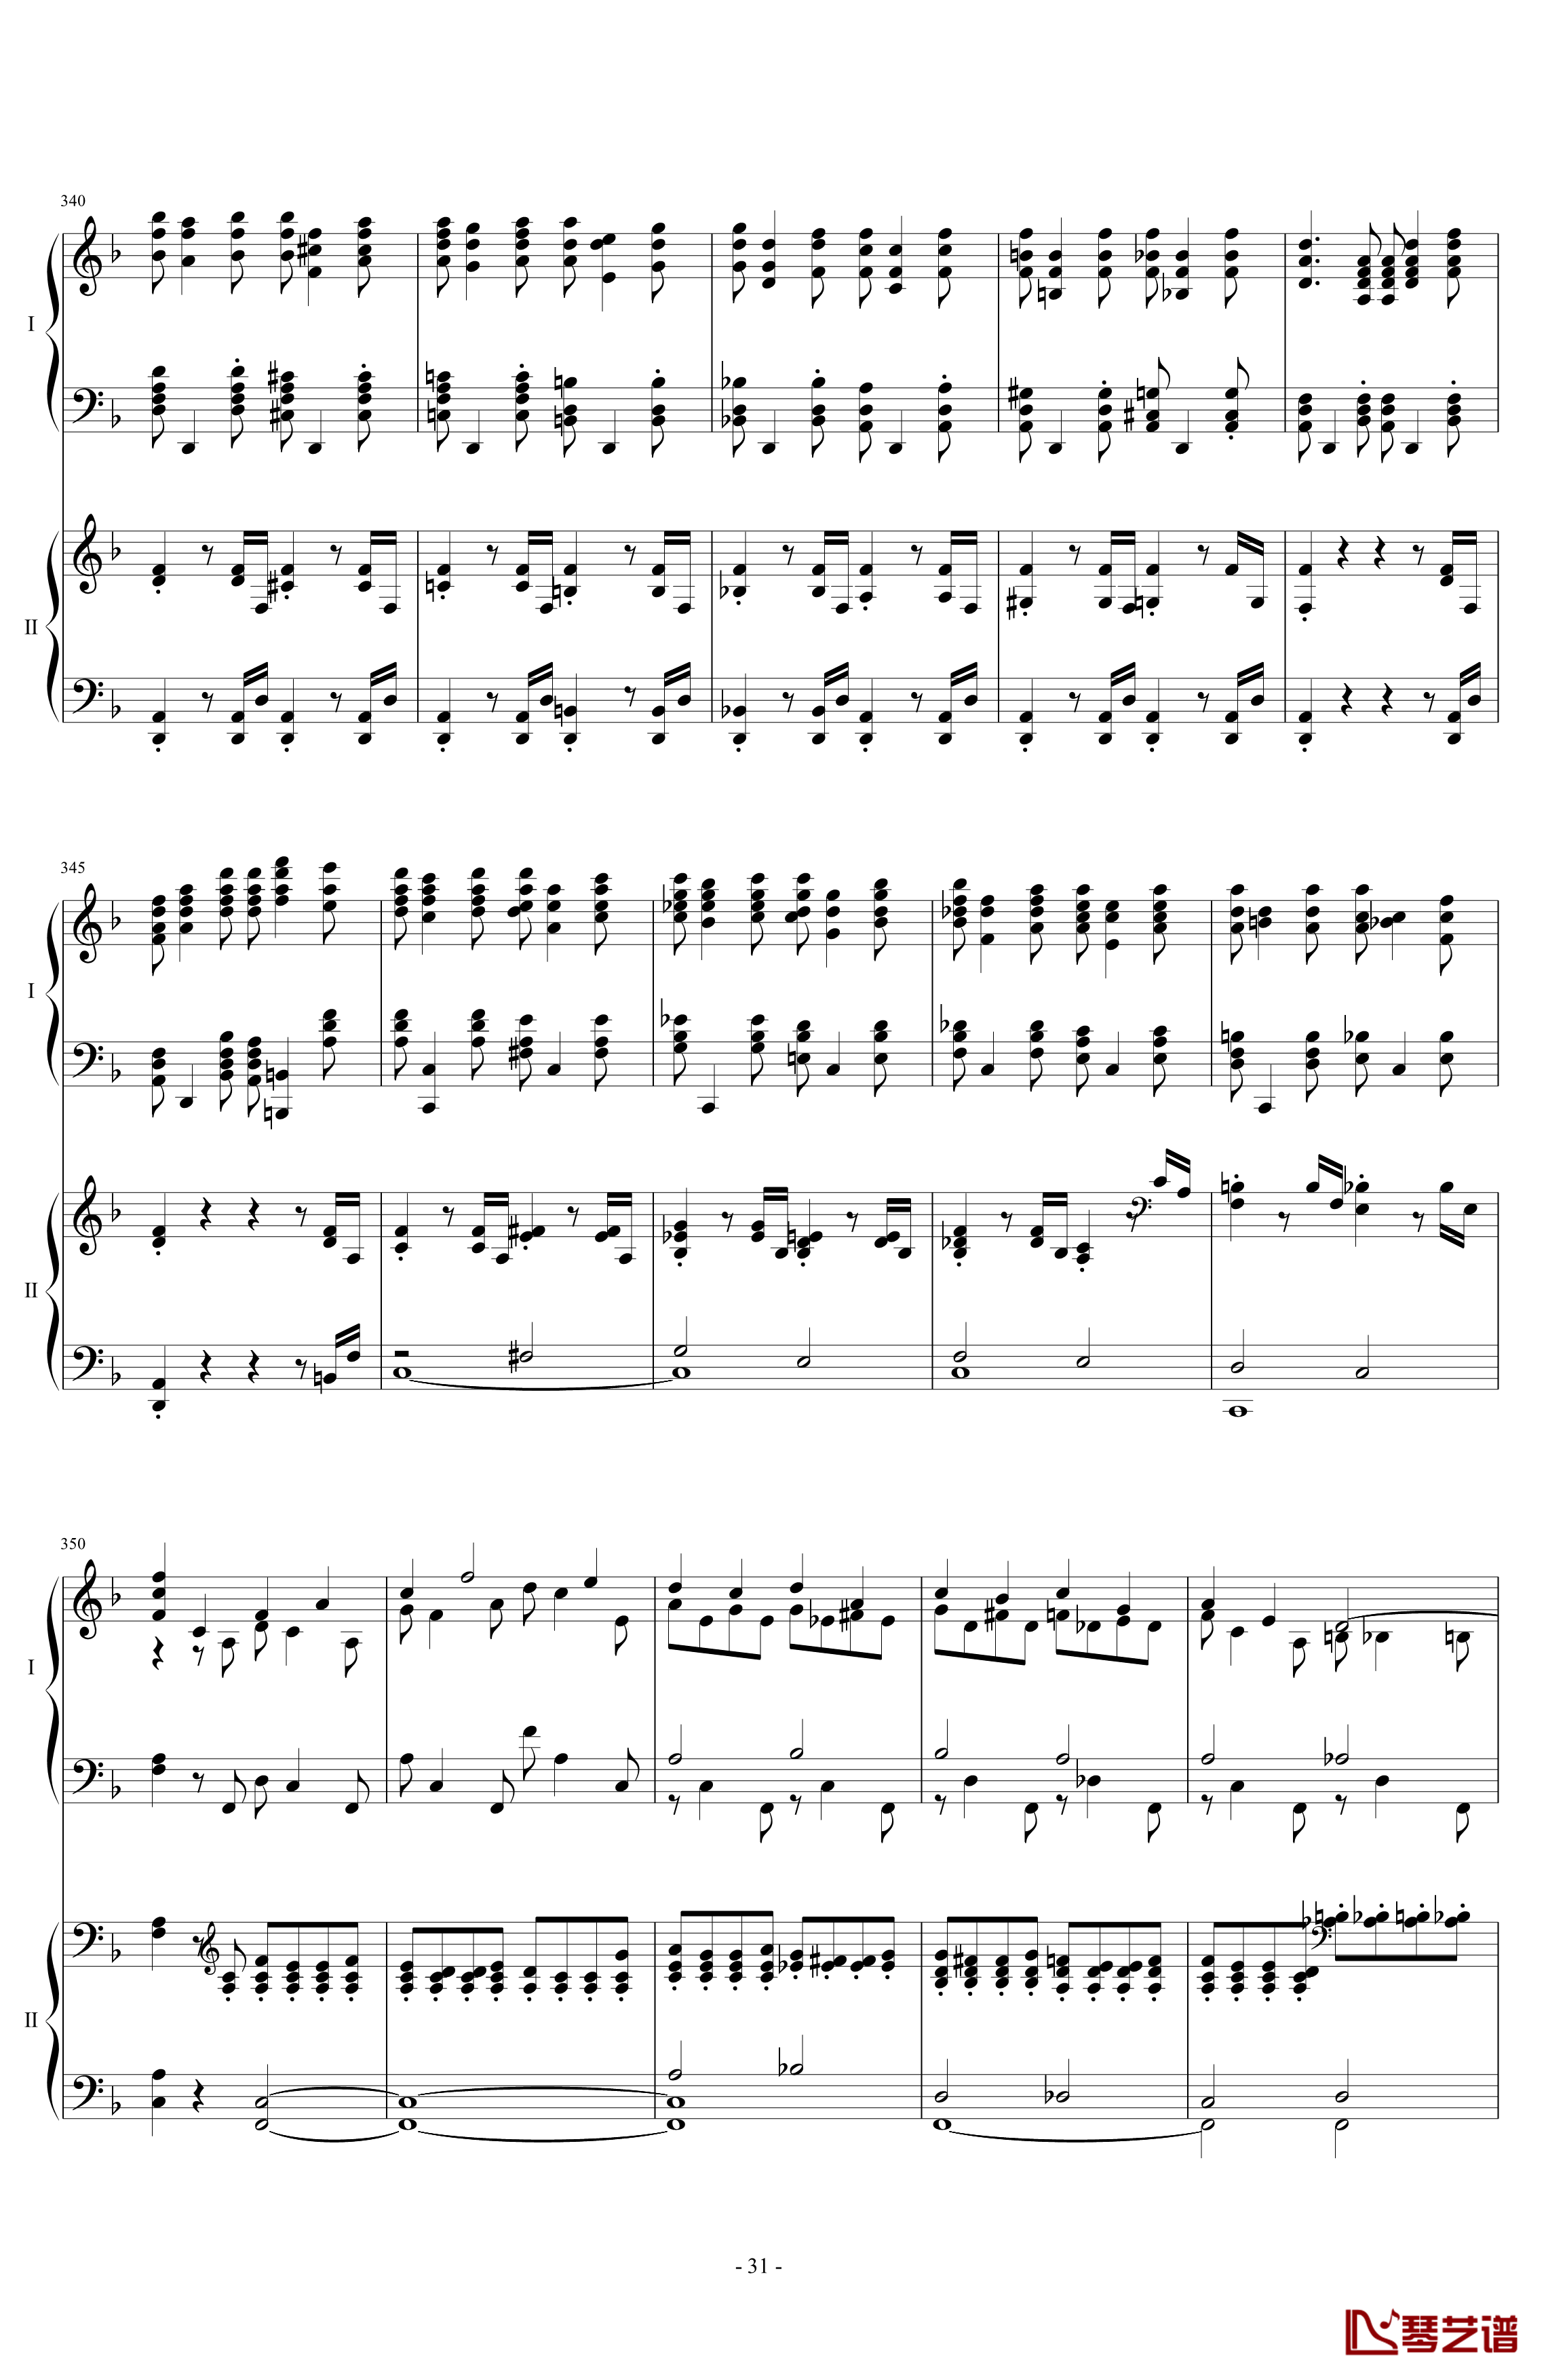 拉三第三乐章41页双钢琴钢琴谱-最难钢琴曲-拉赫马尼若夫31